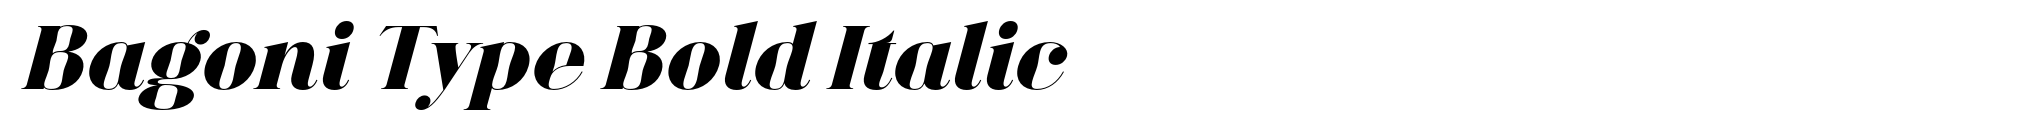 Bagoni Type Bold Italic image